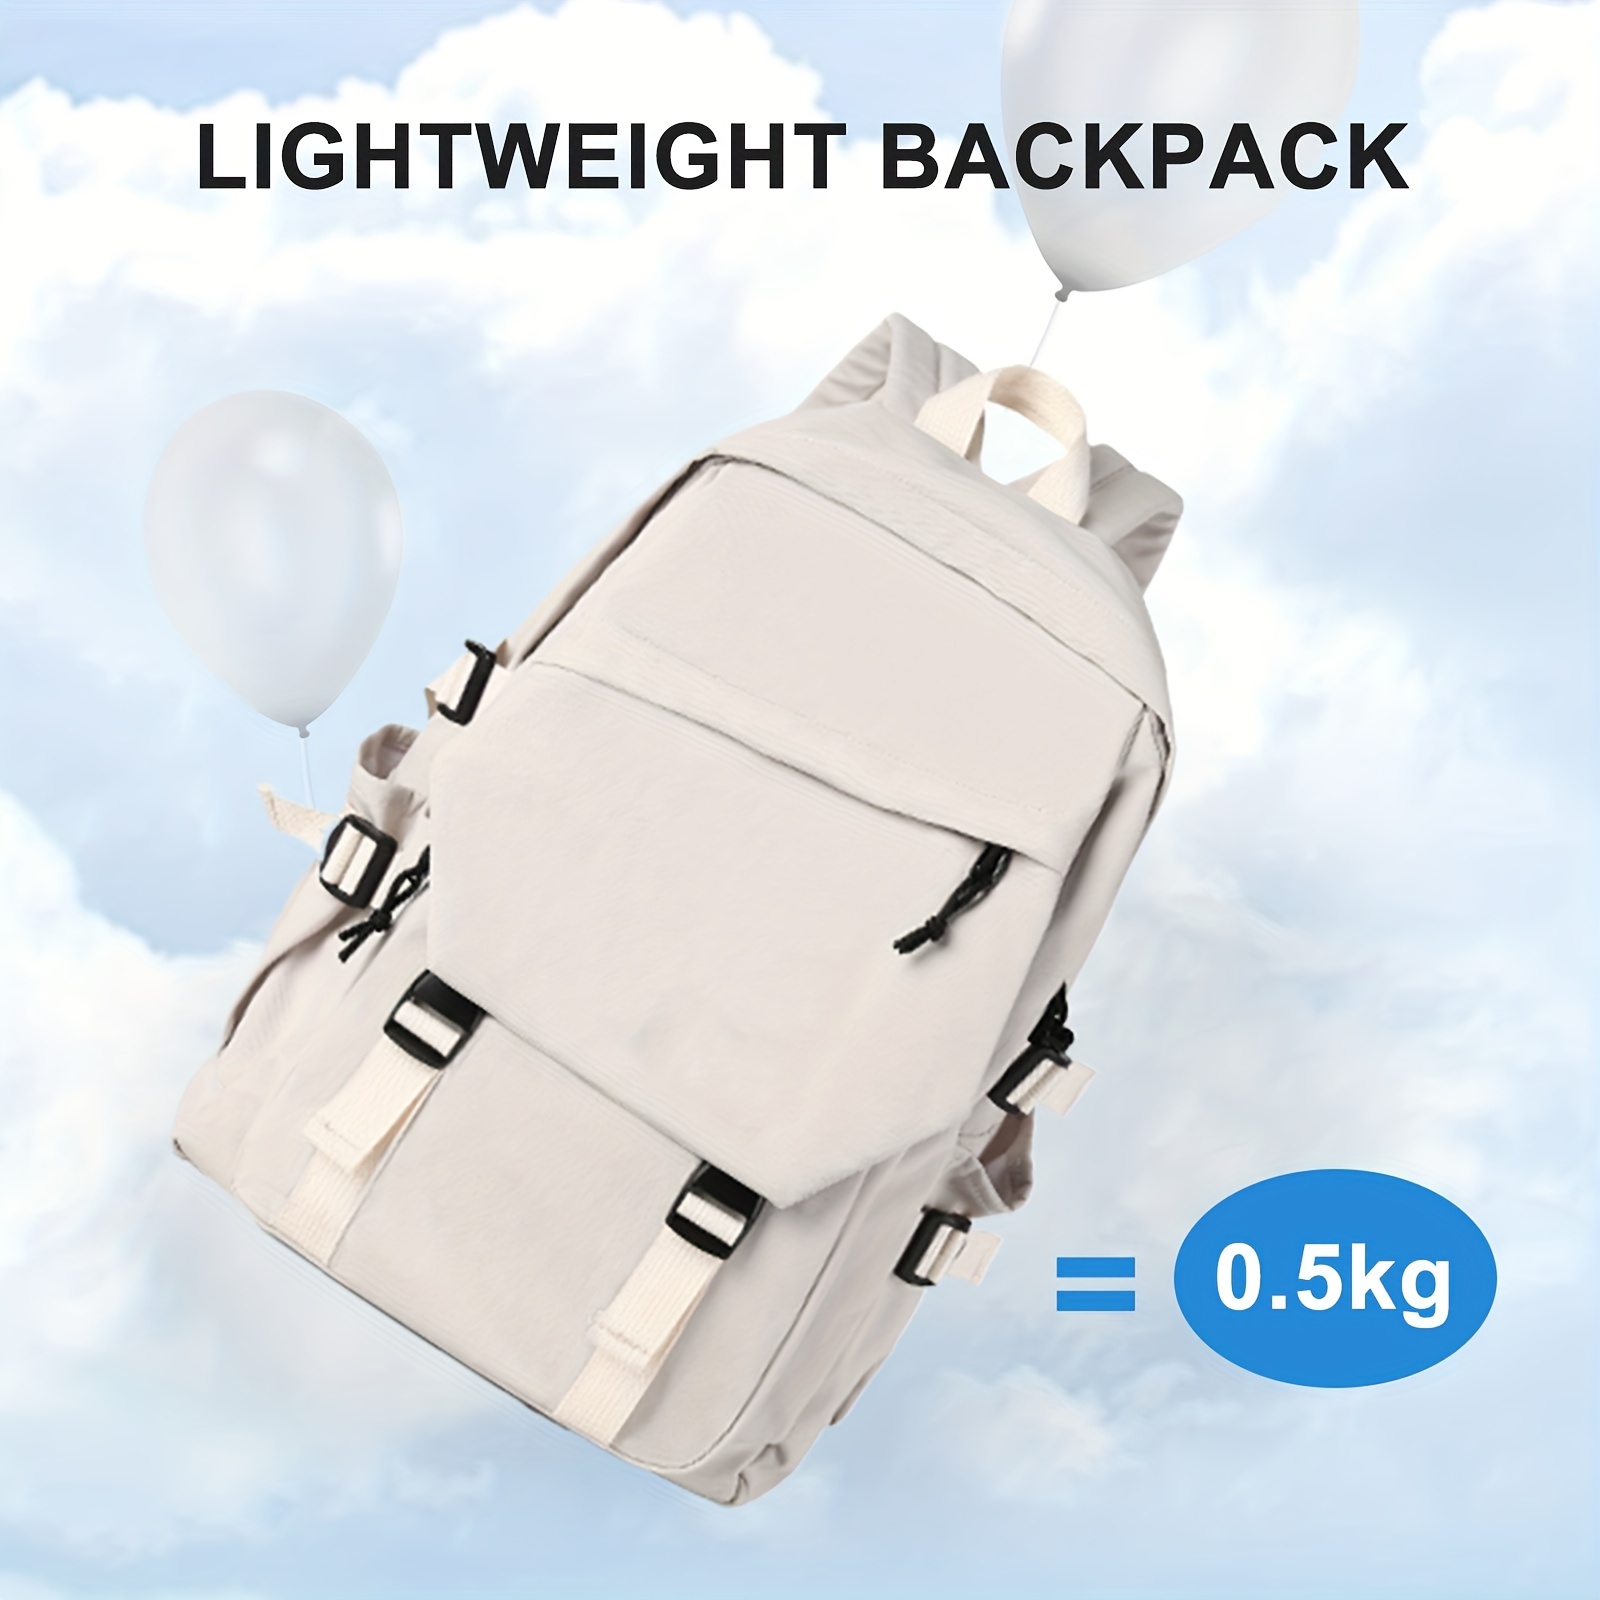 School Backpack Casual Daypack Lightweight Travel Bag Waterproof